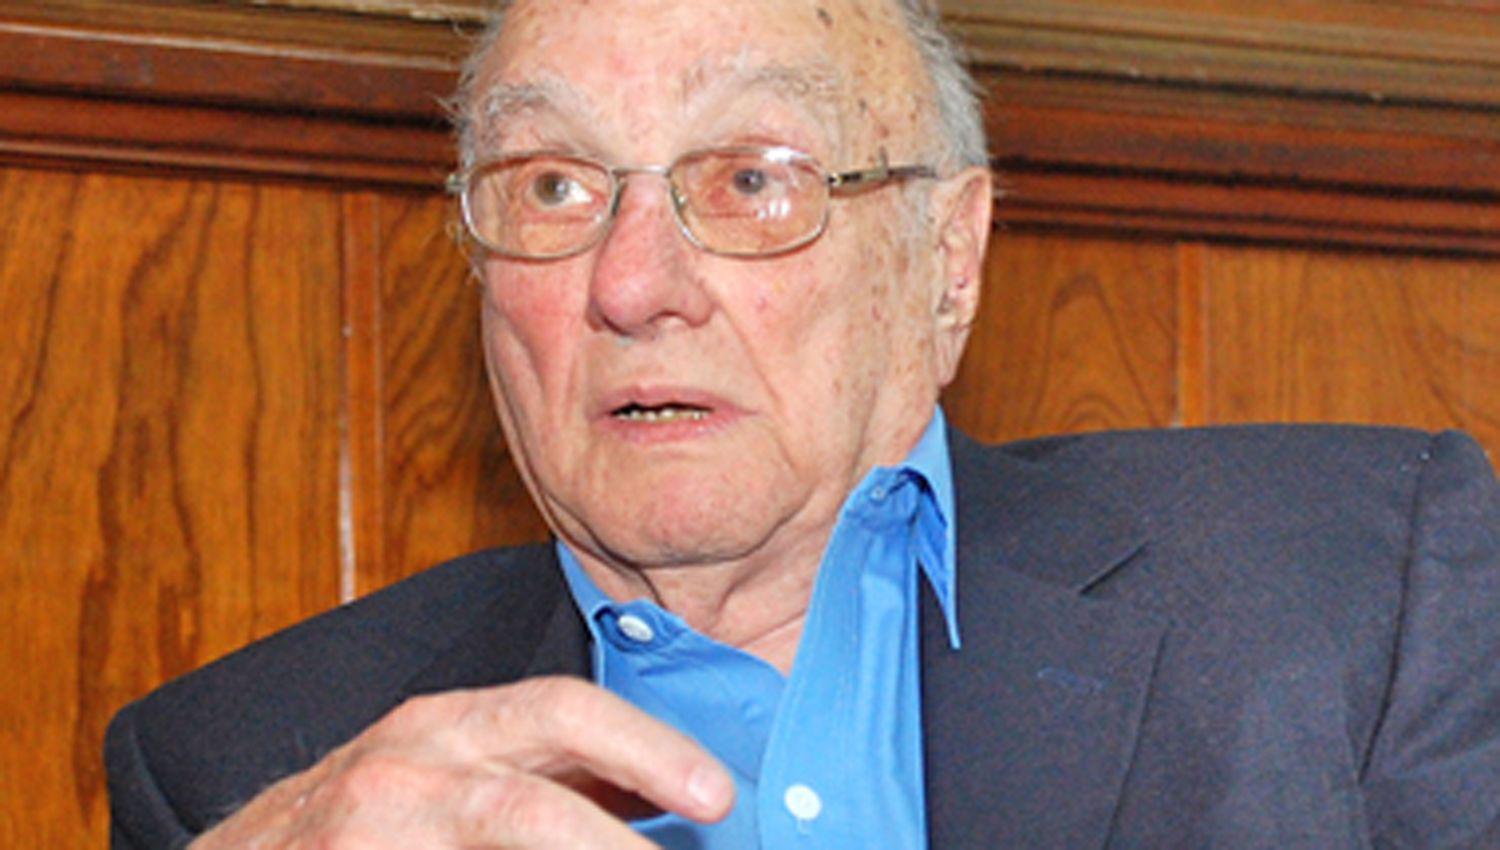 El ingeniero Rafael Kohanoff tenía 94 años y vivía en la vecina provincia